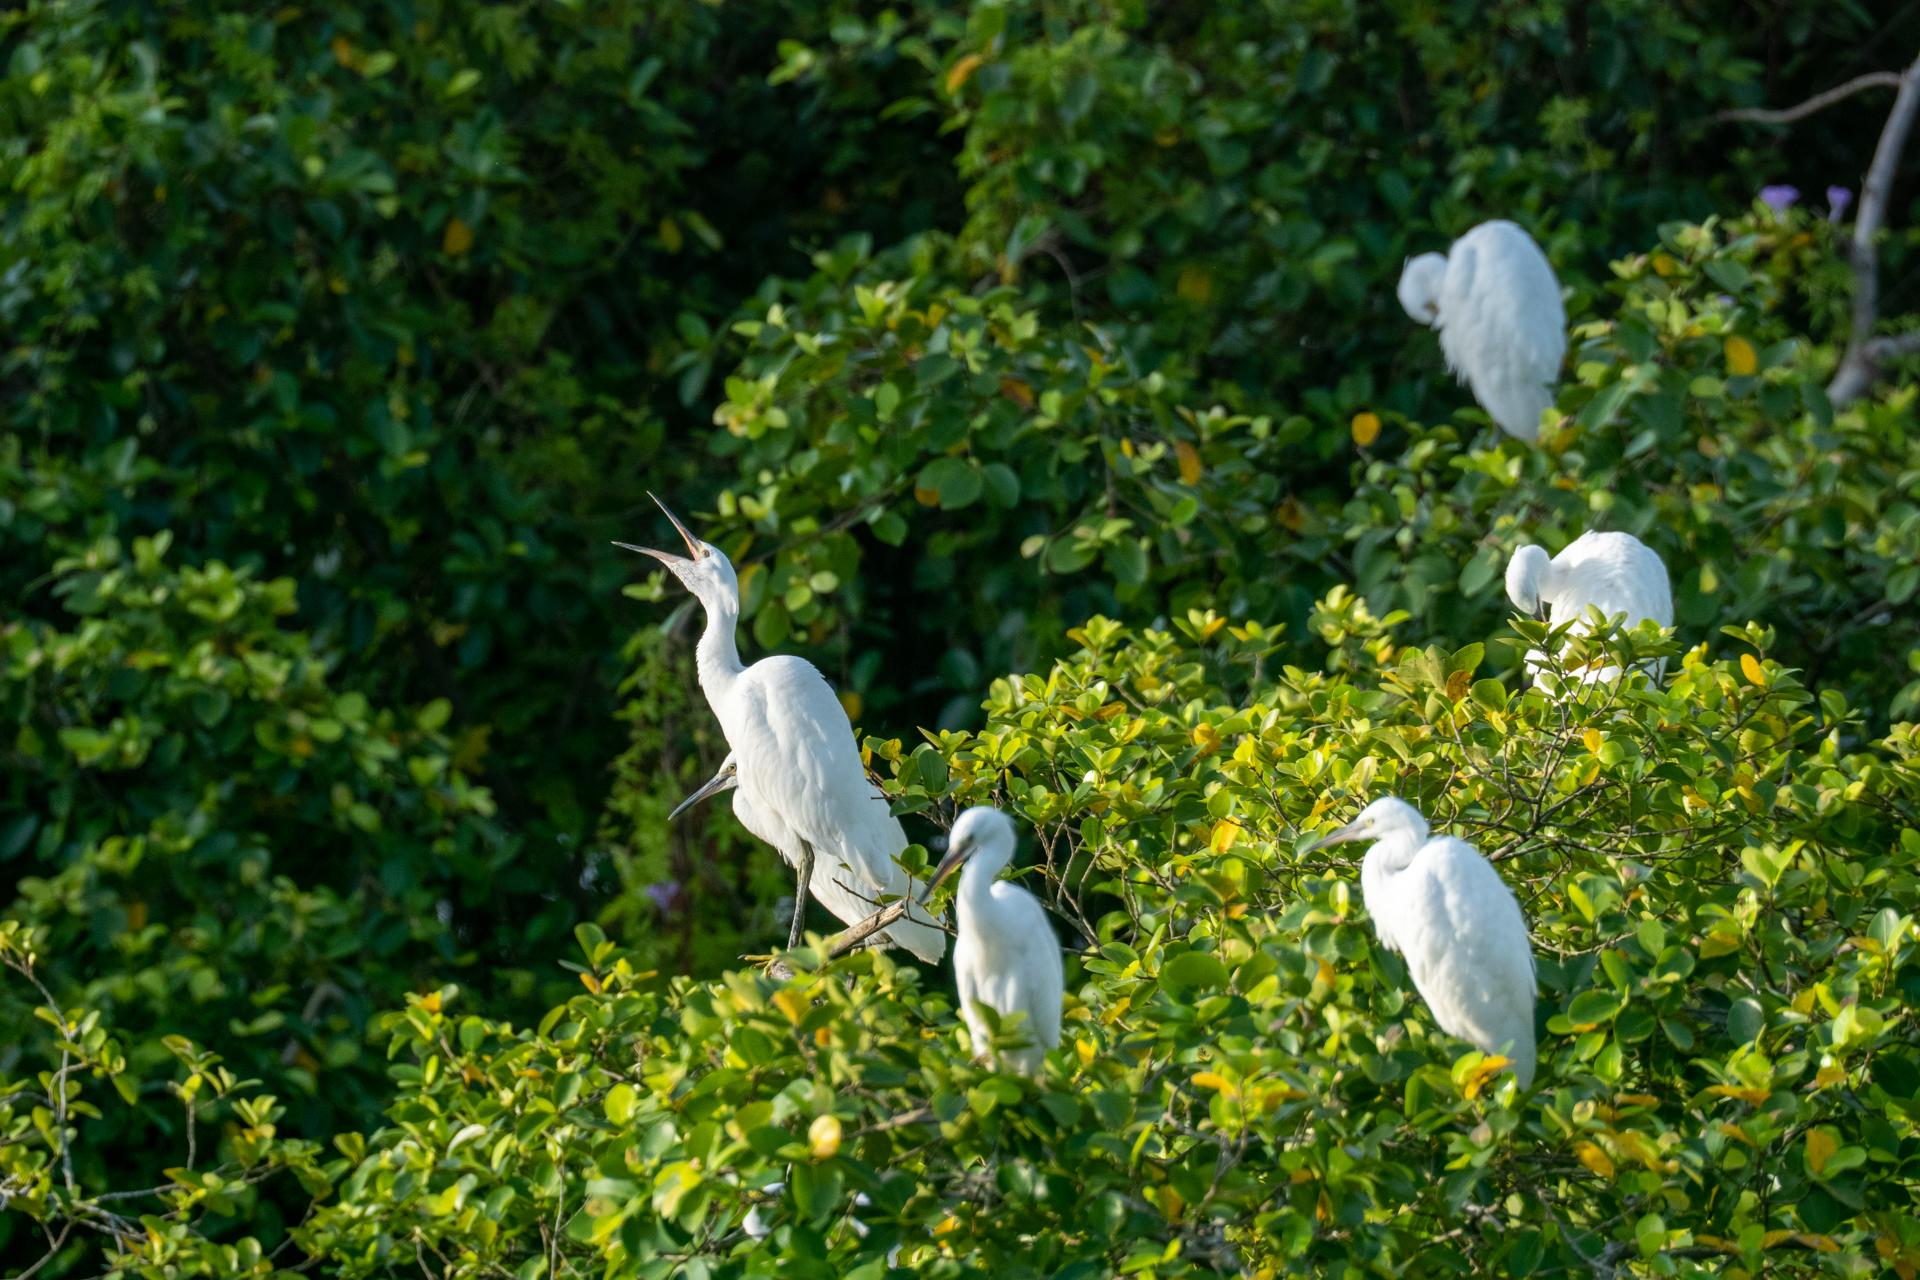 江門市啟超故裡·小鳥天堂文化旅游區是全國最大的天然賞鳥樂園之一。阮國志 攝